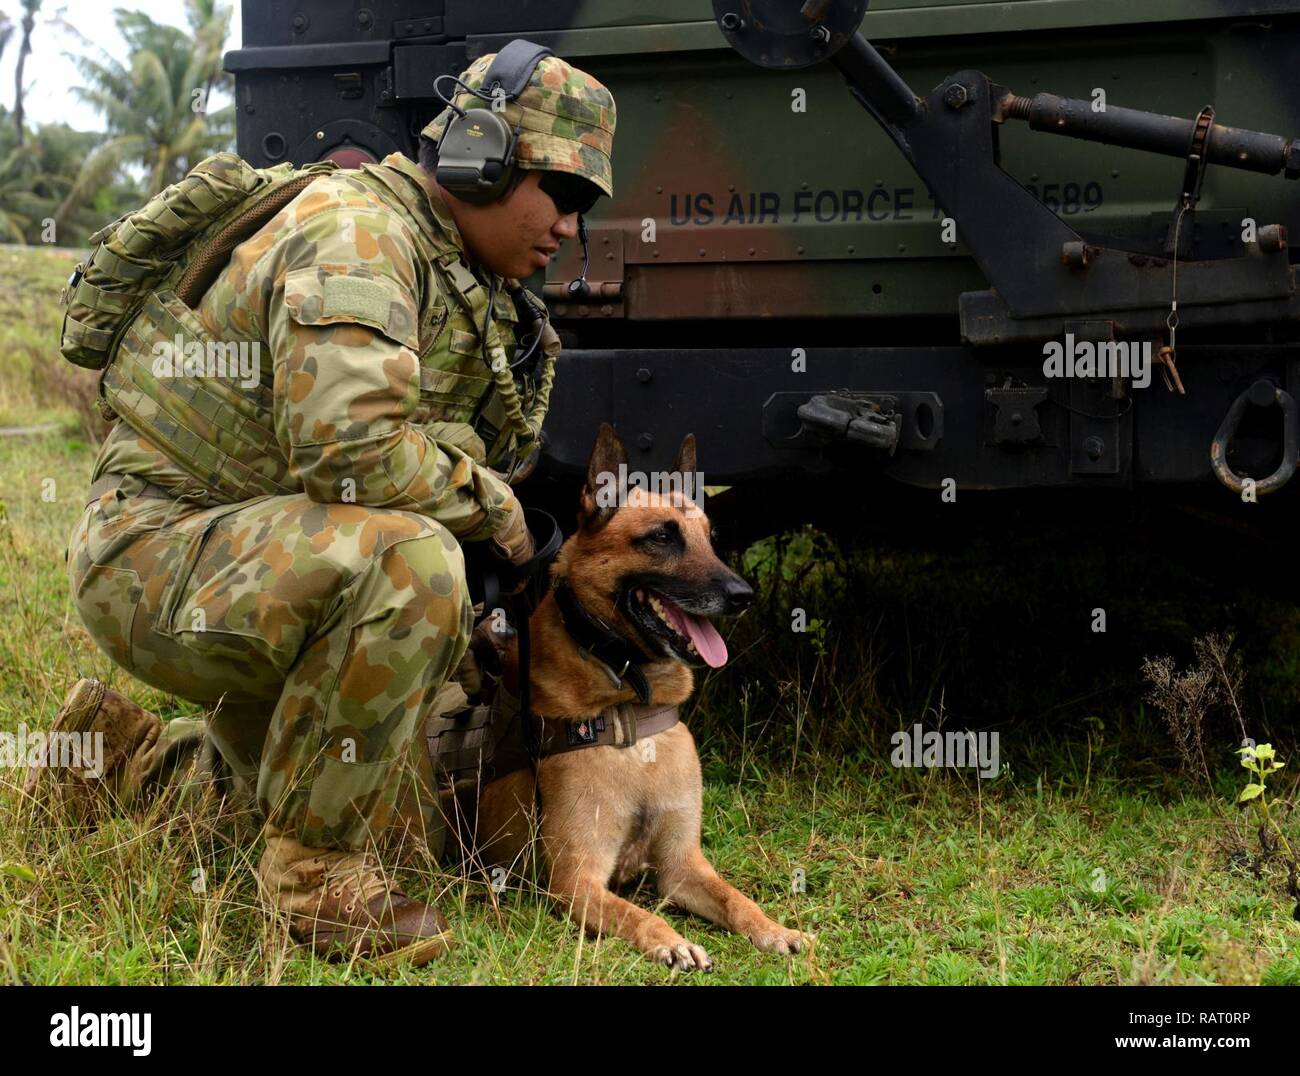 La Royal Australian Air Force chien travaille avec son chien au cours d'un exercice à faire face au nord, le 13 février 2017, à la base aérienne d'Andersen, Guam. Cet exercice aide à cultiver des liens communs et favoriser la bonne volonté entre les États-Unis et la communauté internationale par le biais de la formation. Banque D'Images